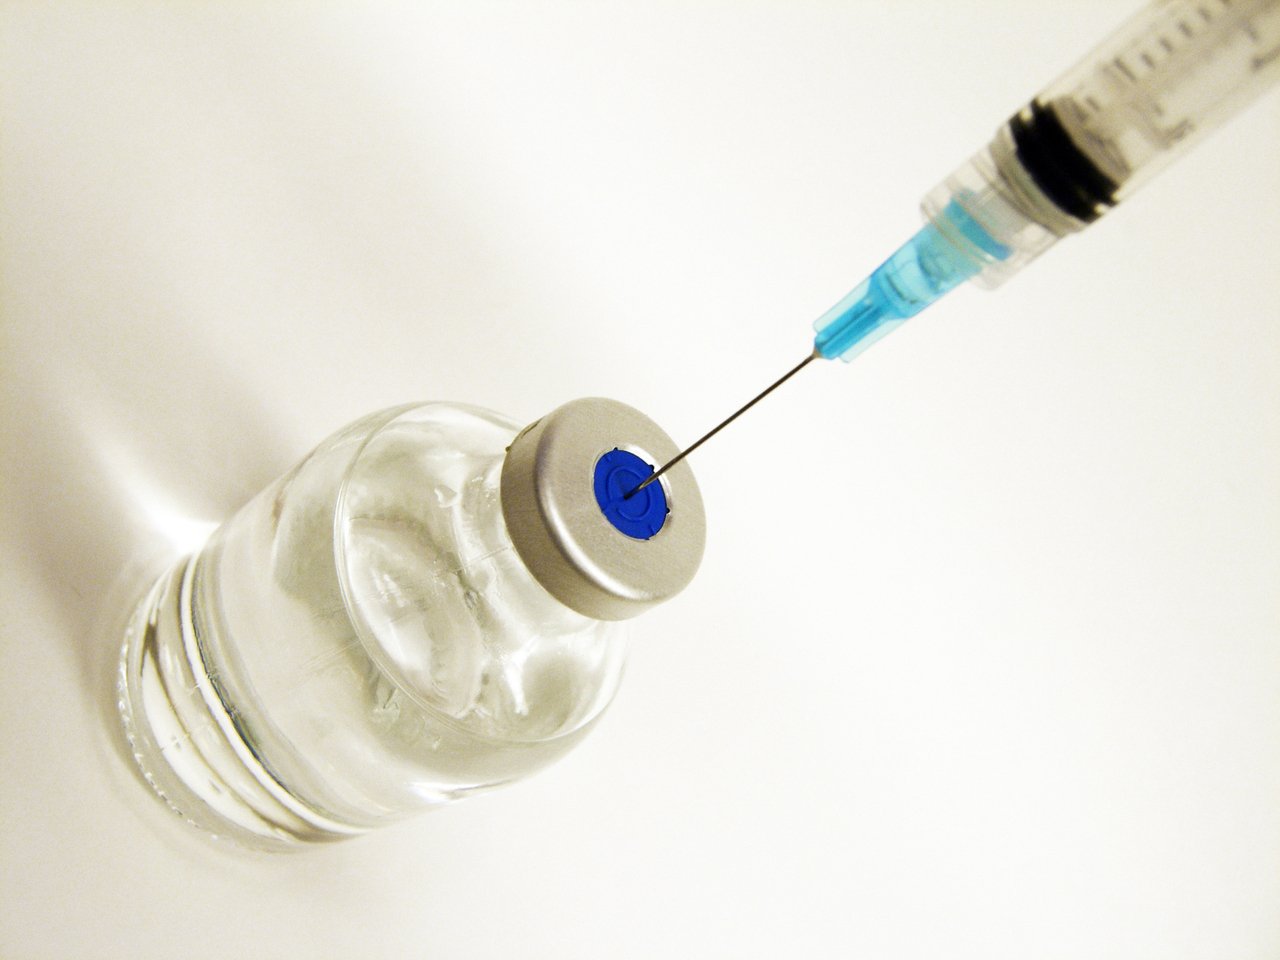 Peste 40% dintre spanioli, dispuşi să se vaccineze anti COVID-19, potrivit unui sondaj